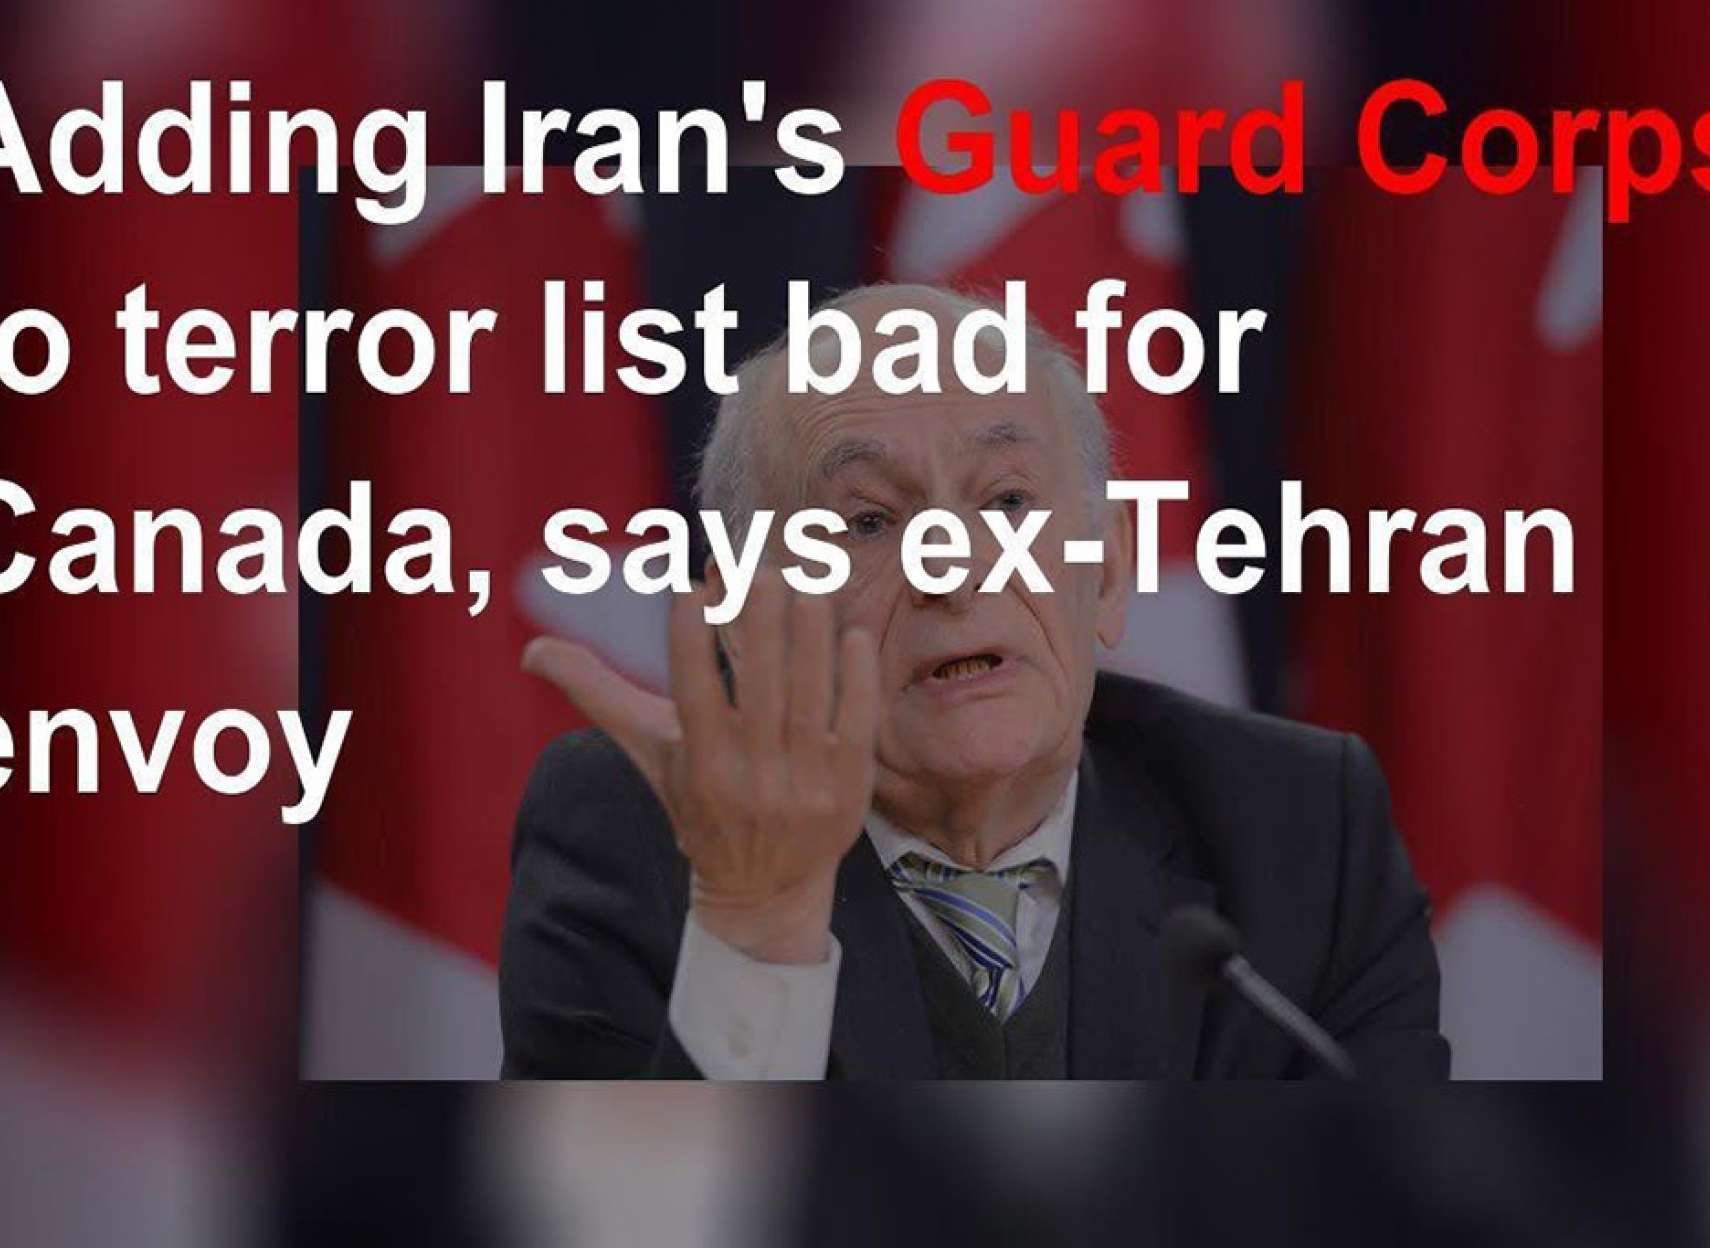 اخبار-کانادا-تقاضای-تروریستی-اعلان-کردن-فوری-سپاه-از-دولت-کانادا